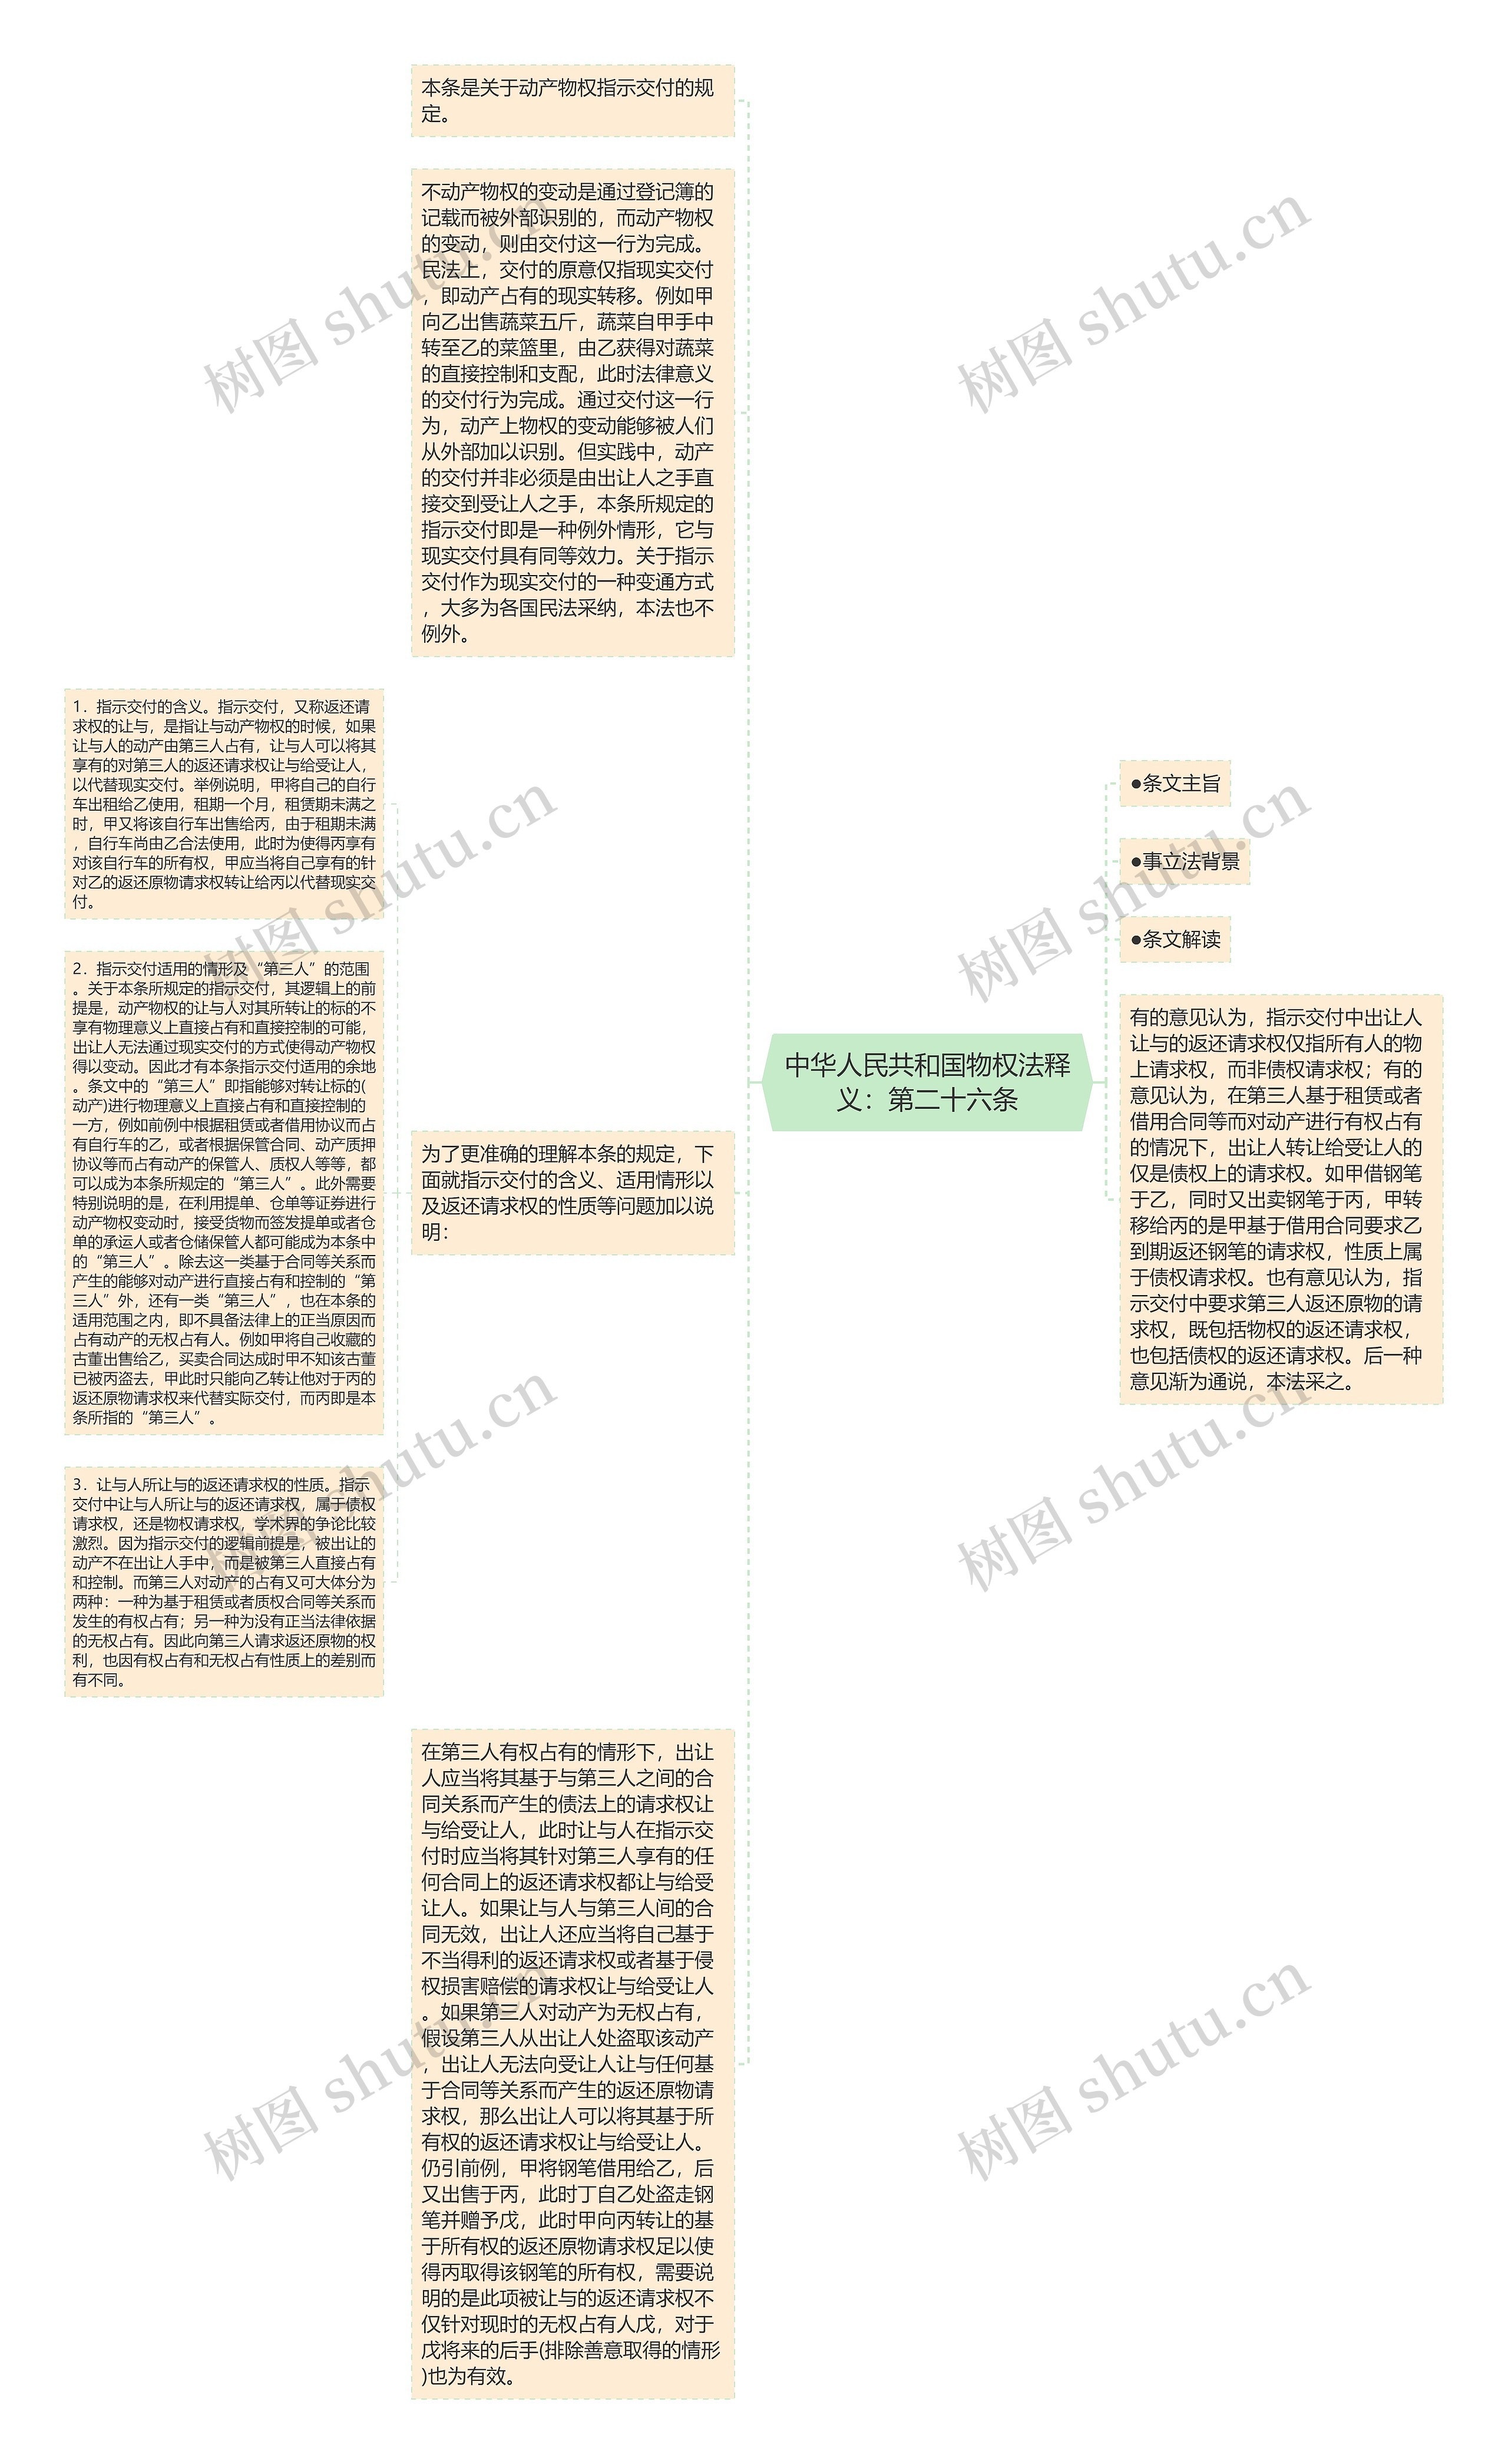 中华人民共和国物权法释义：第二十六条